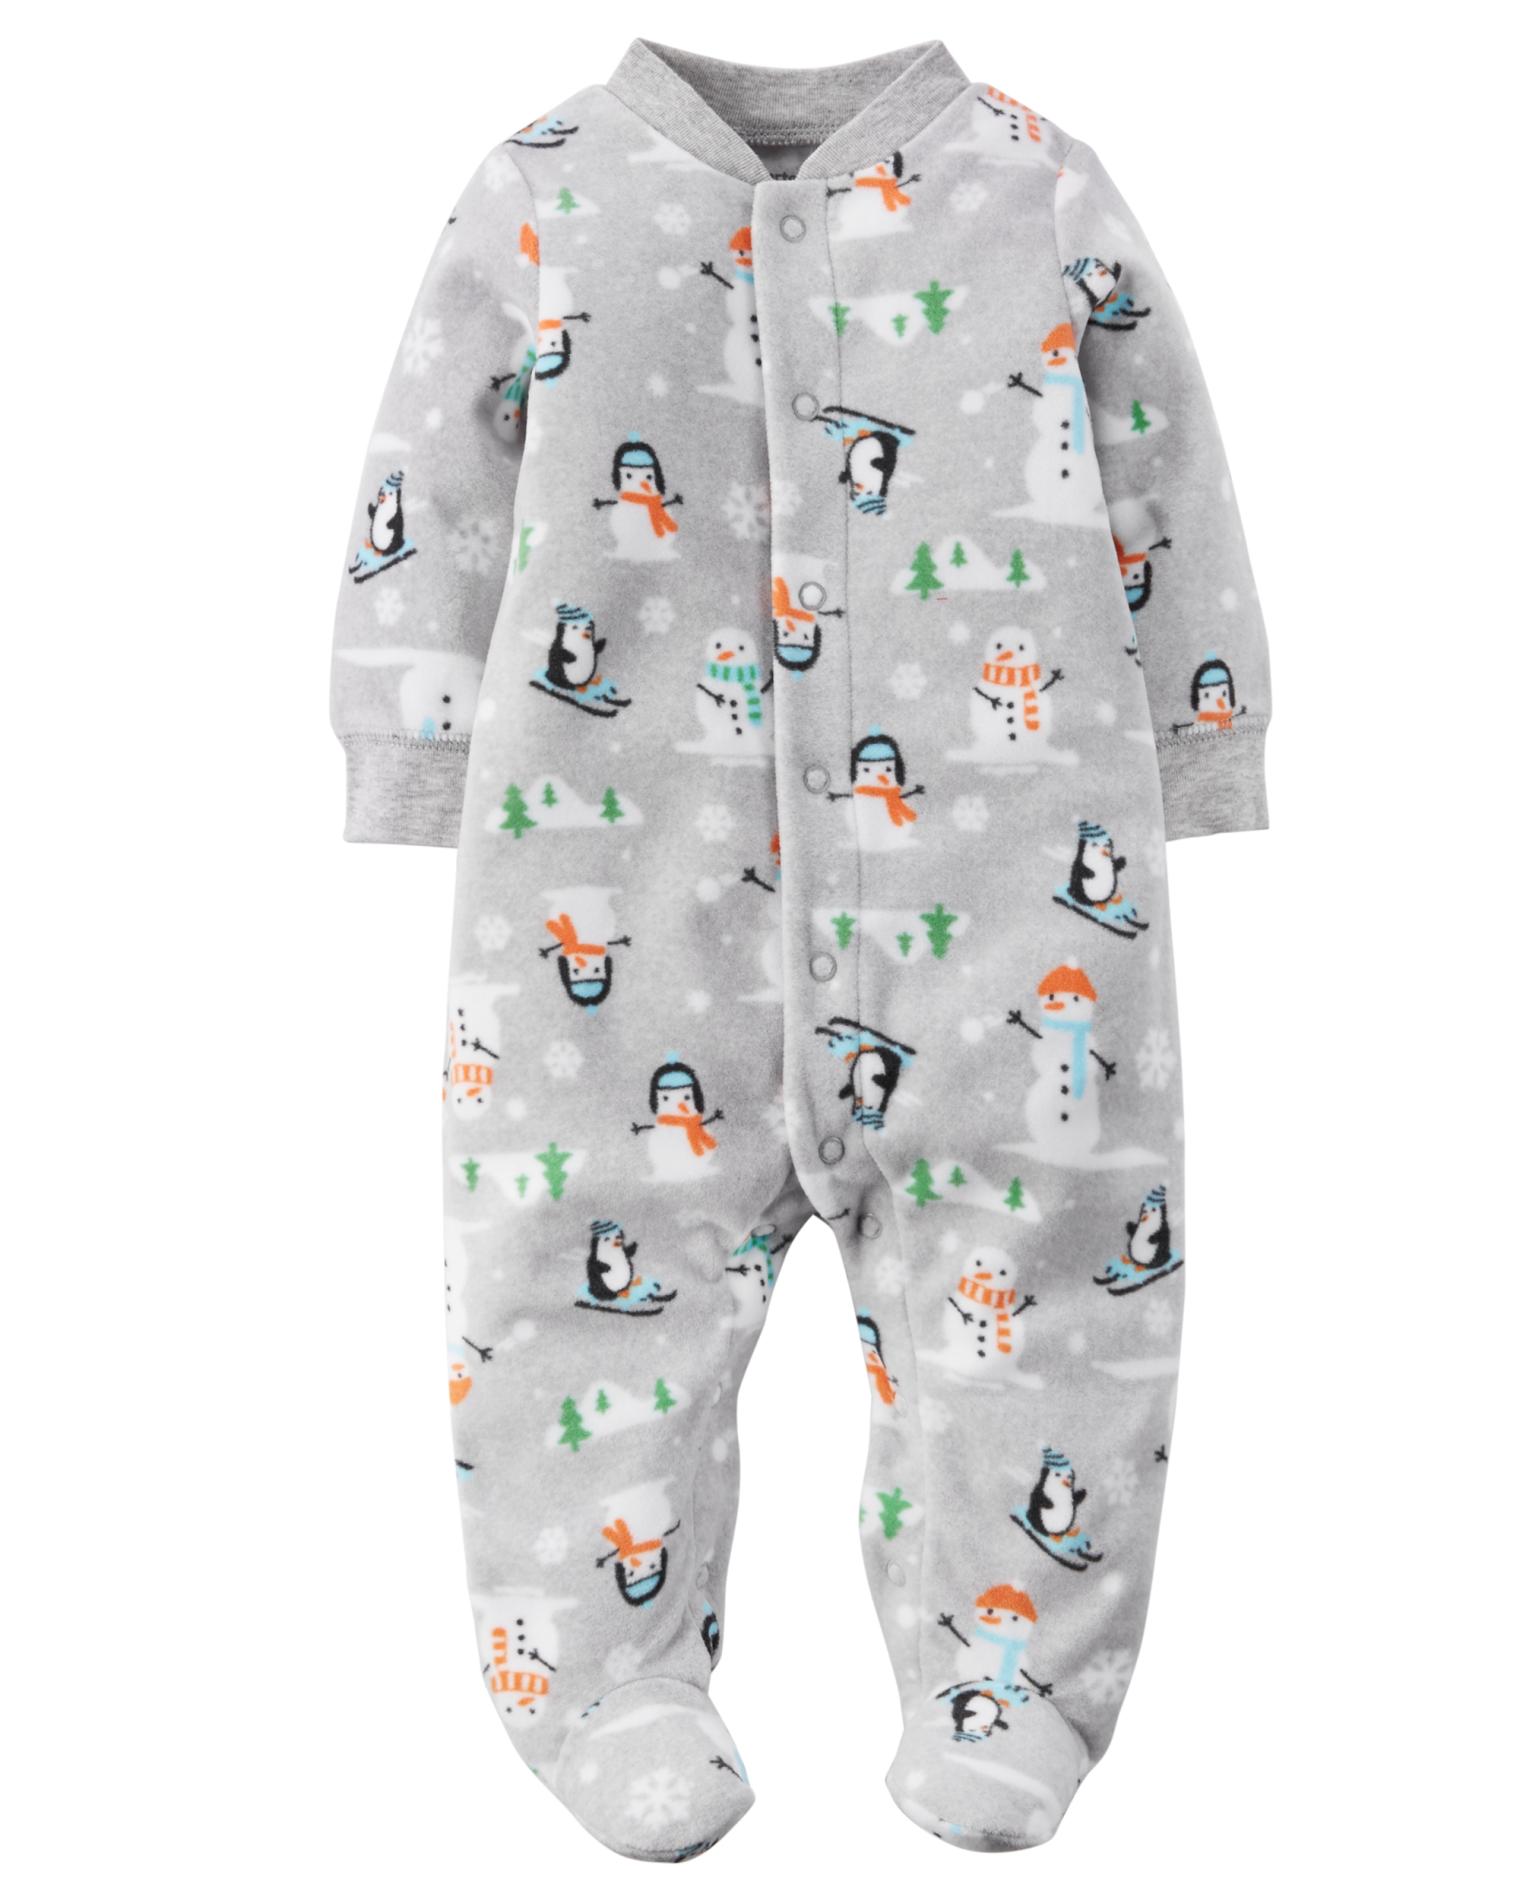 Carter's Newborn Boys' Long-Sleeve Bodysuit - Snowman & Penguin